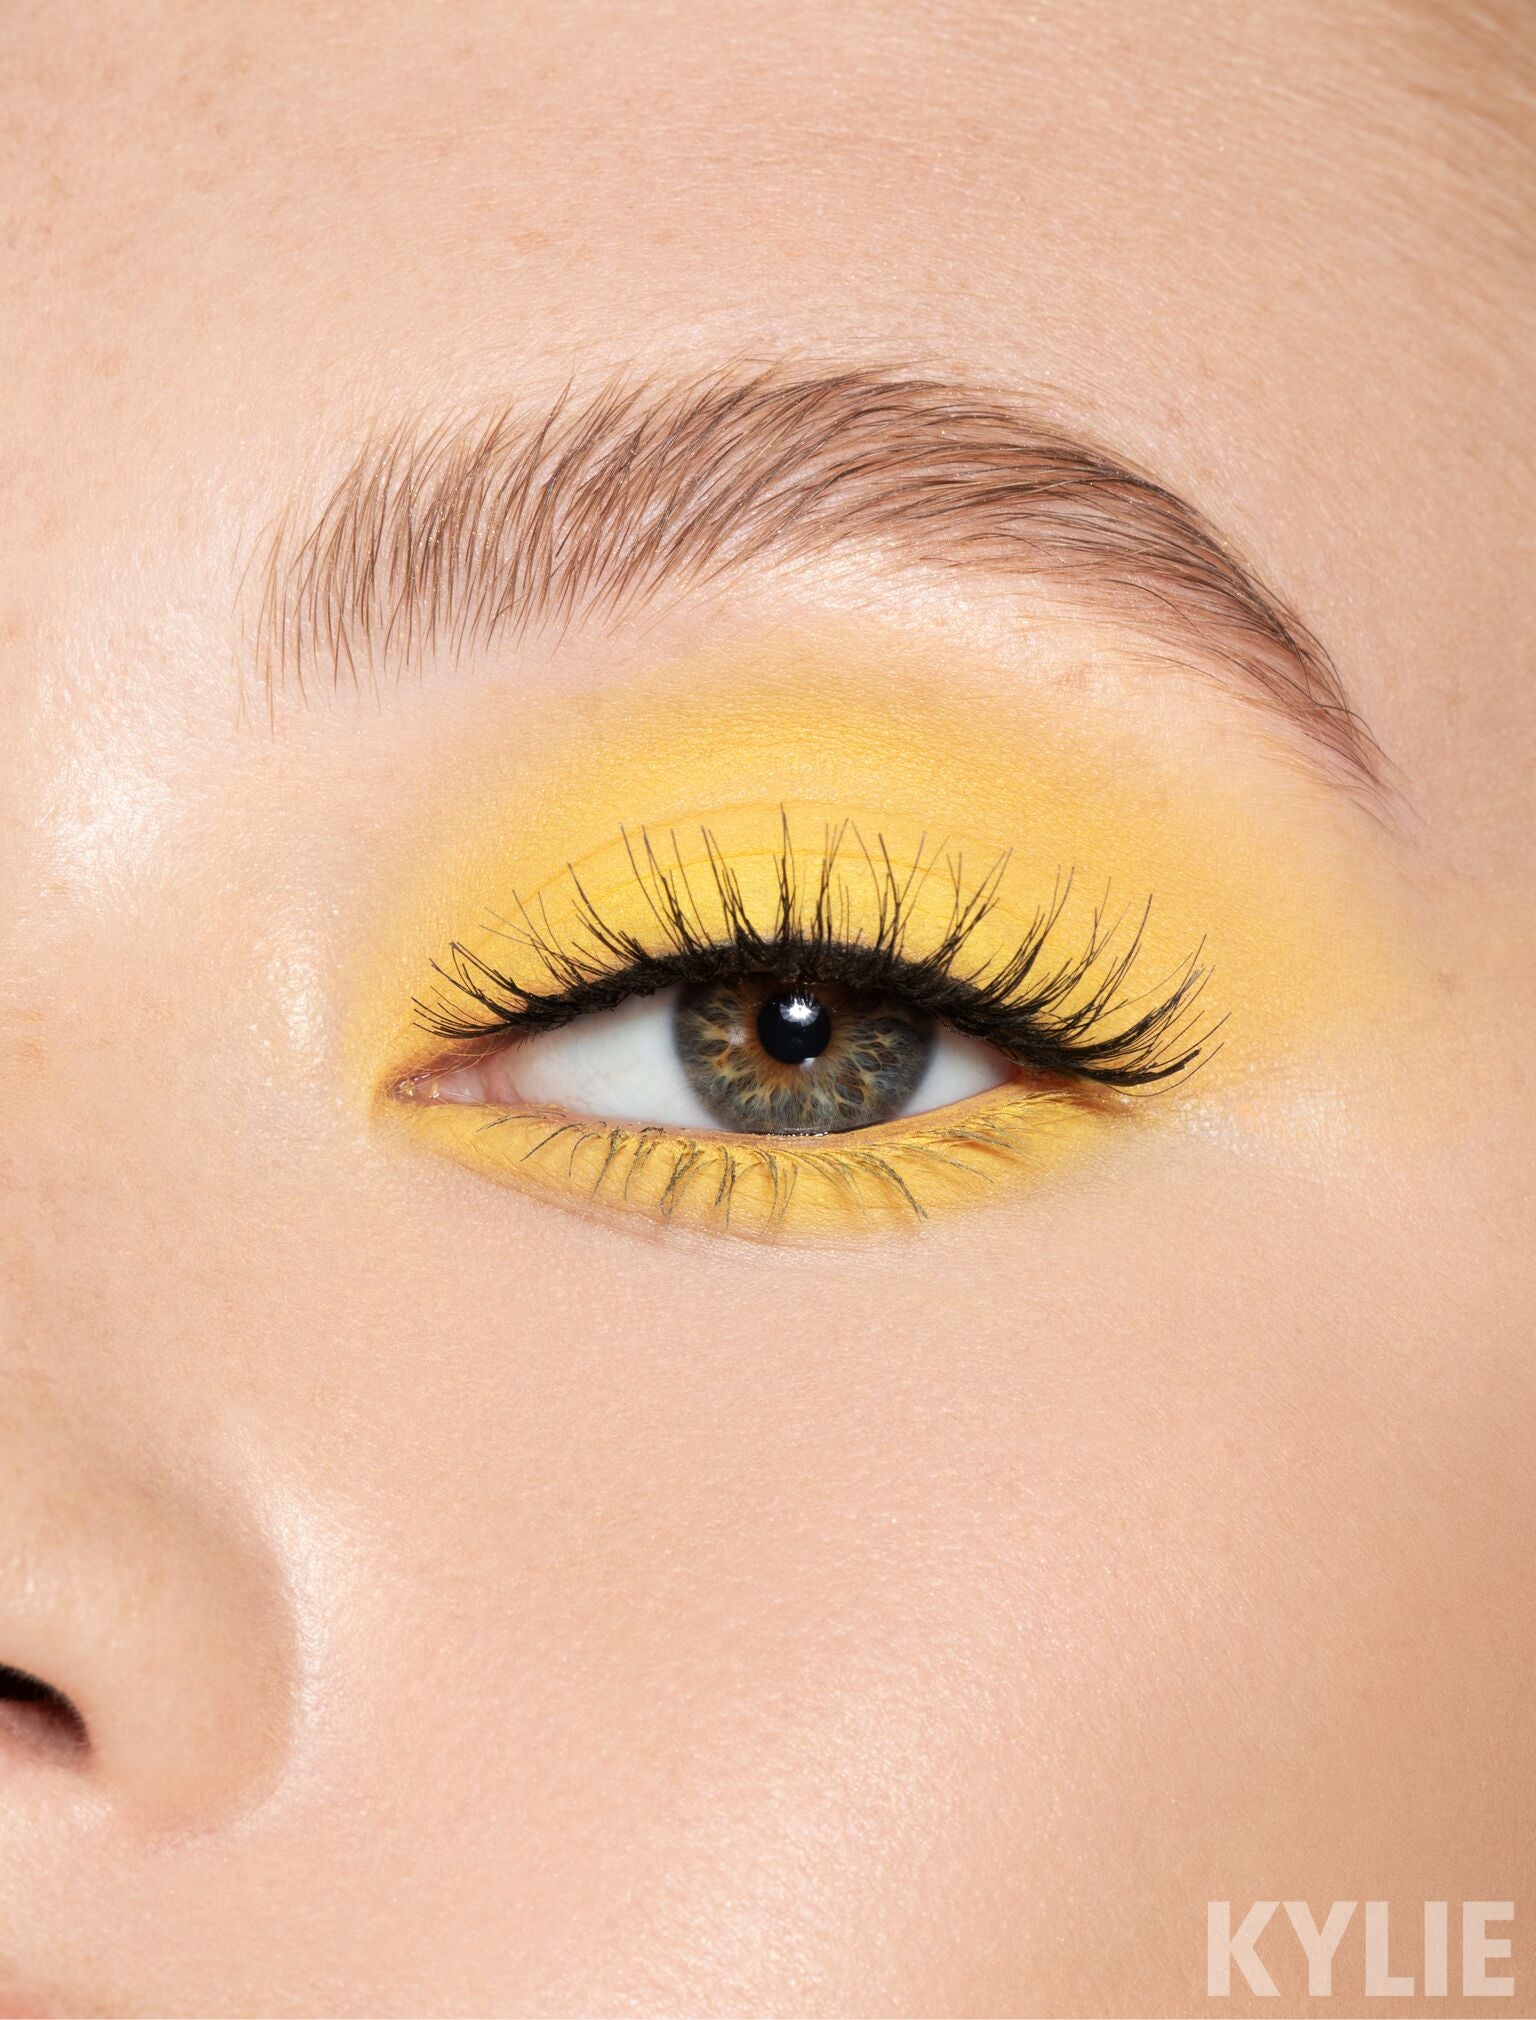 yellow eyeshadow